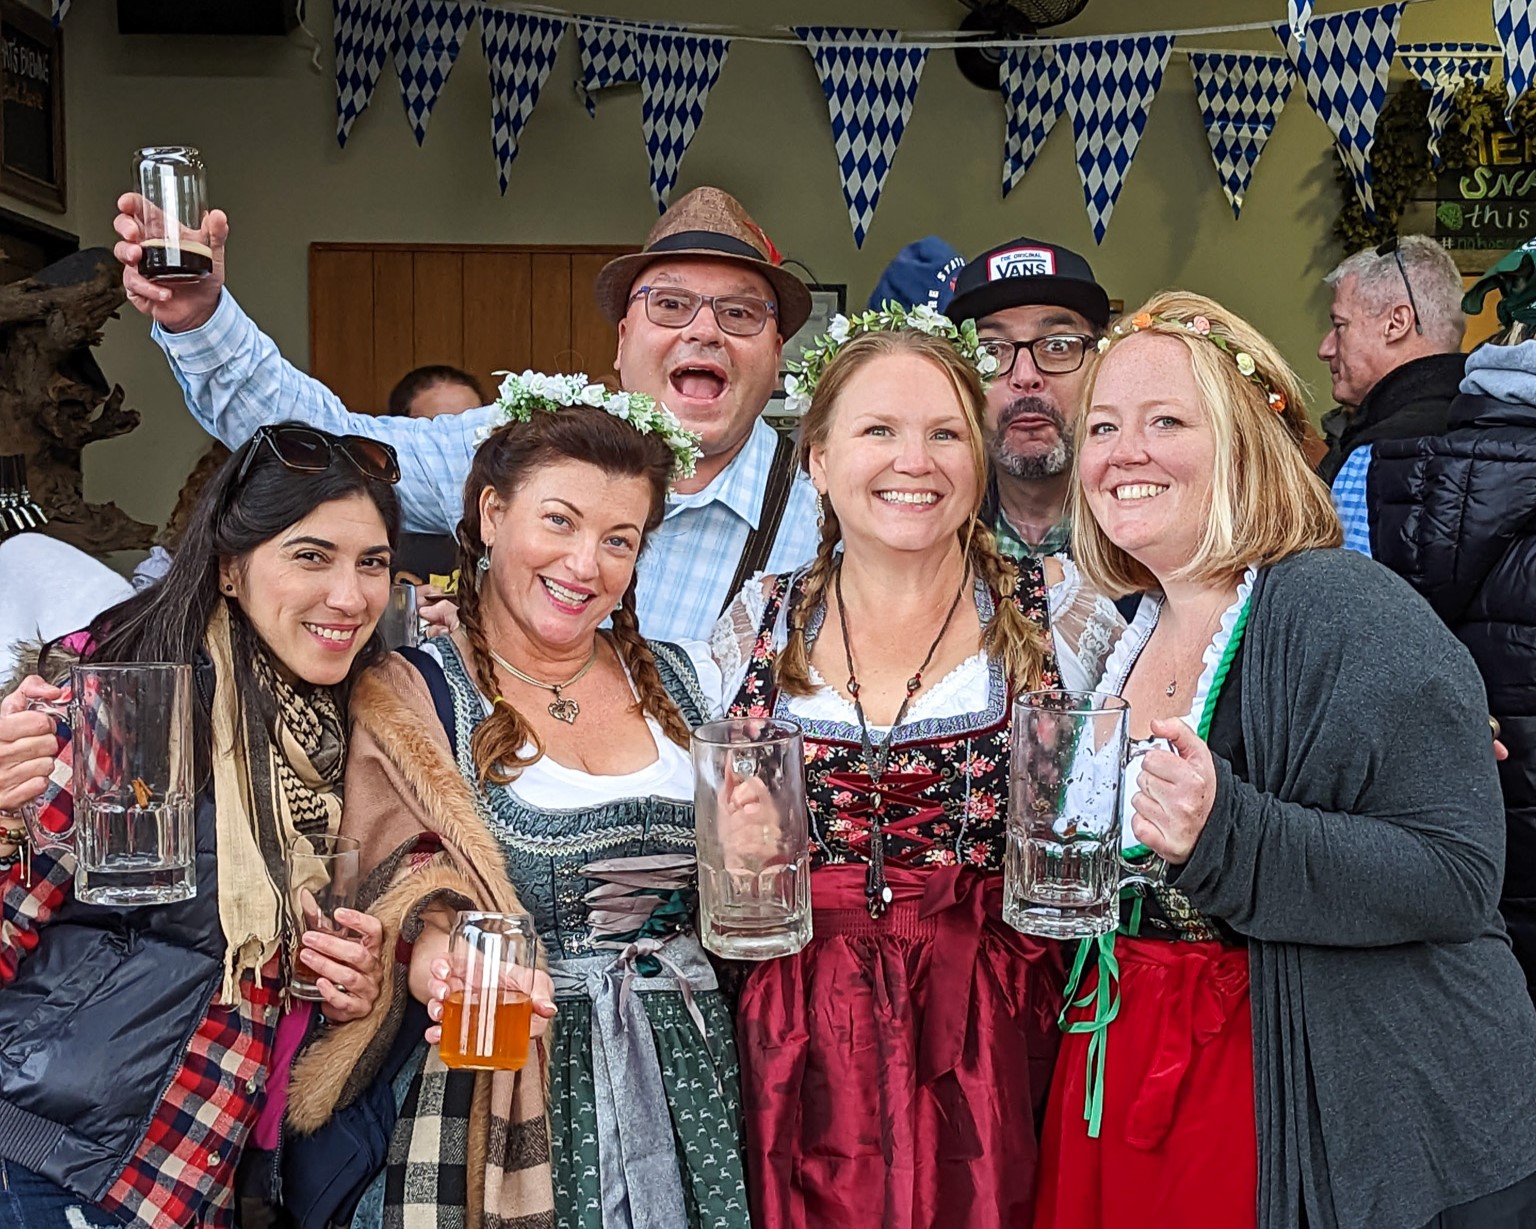 women and men celebrate in German Oktoberfest attire